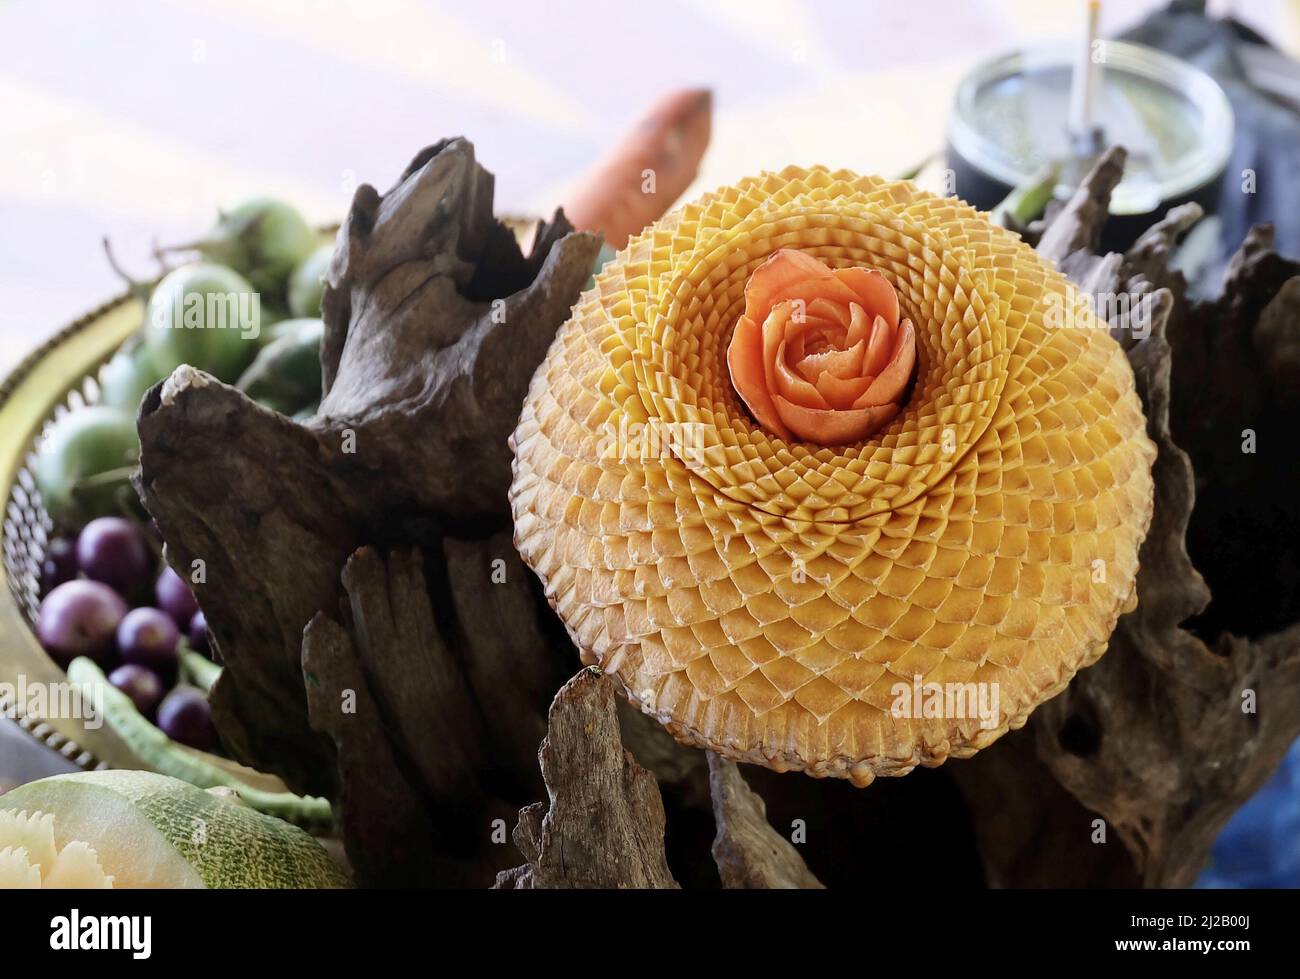 Les sculptures de Melon, de pastèque et de carotte aux fruits et légumes thaïlandais sont des motifs floraux. Banque D'Images